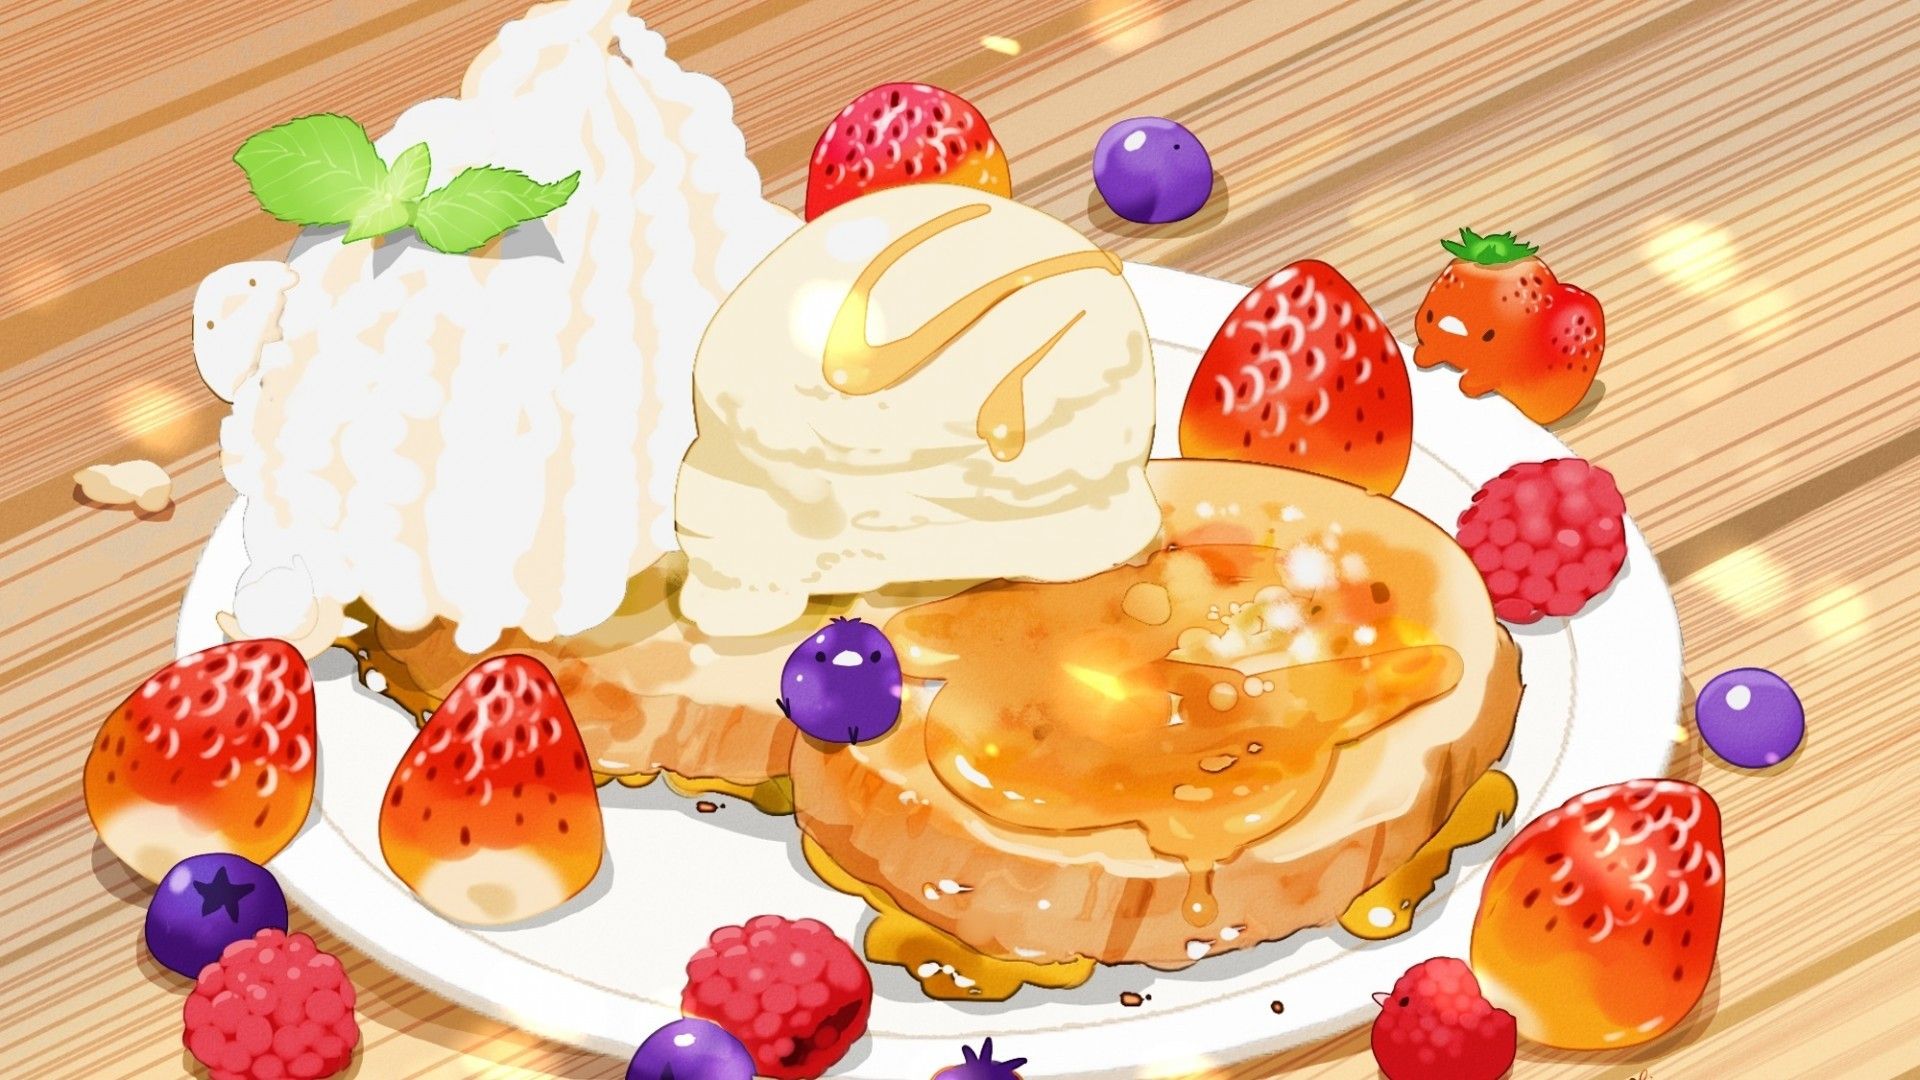 Dessert Anime Wallpaper Free Dessert Anime Background